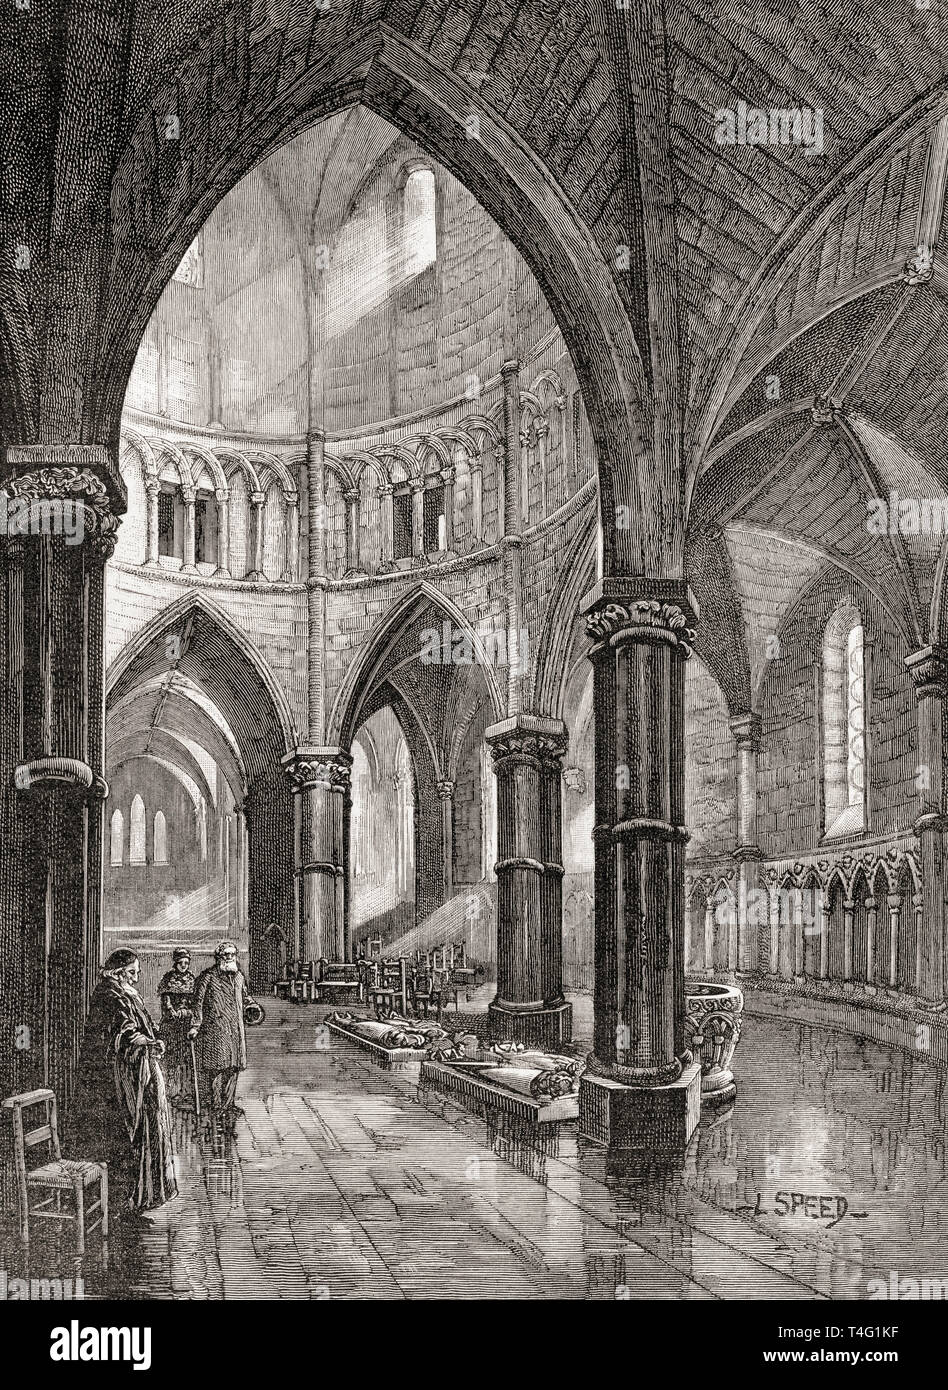 El interior de la iglesia del Temple, Londres, Inglaterra, visto aquí en el siglo XIX. Imágenes de Londres, publicado 1890 Foto de stock